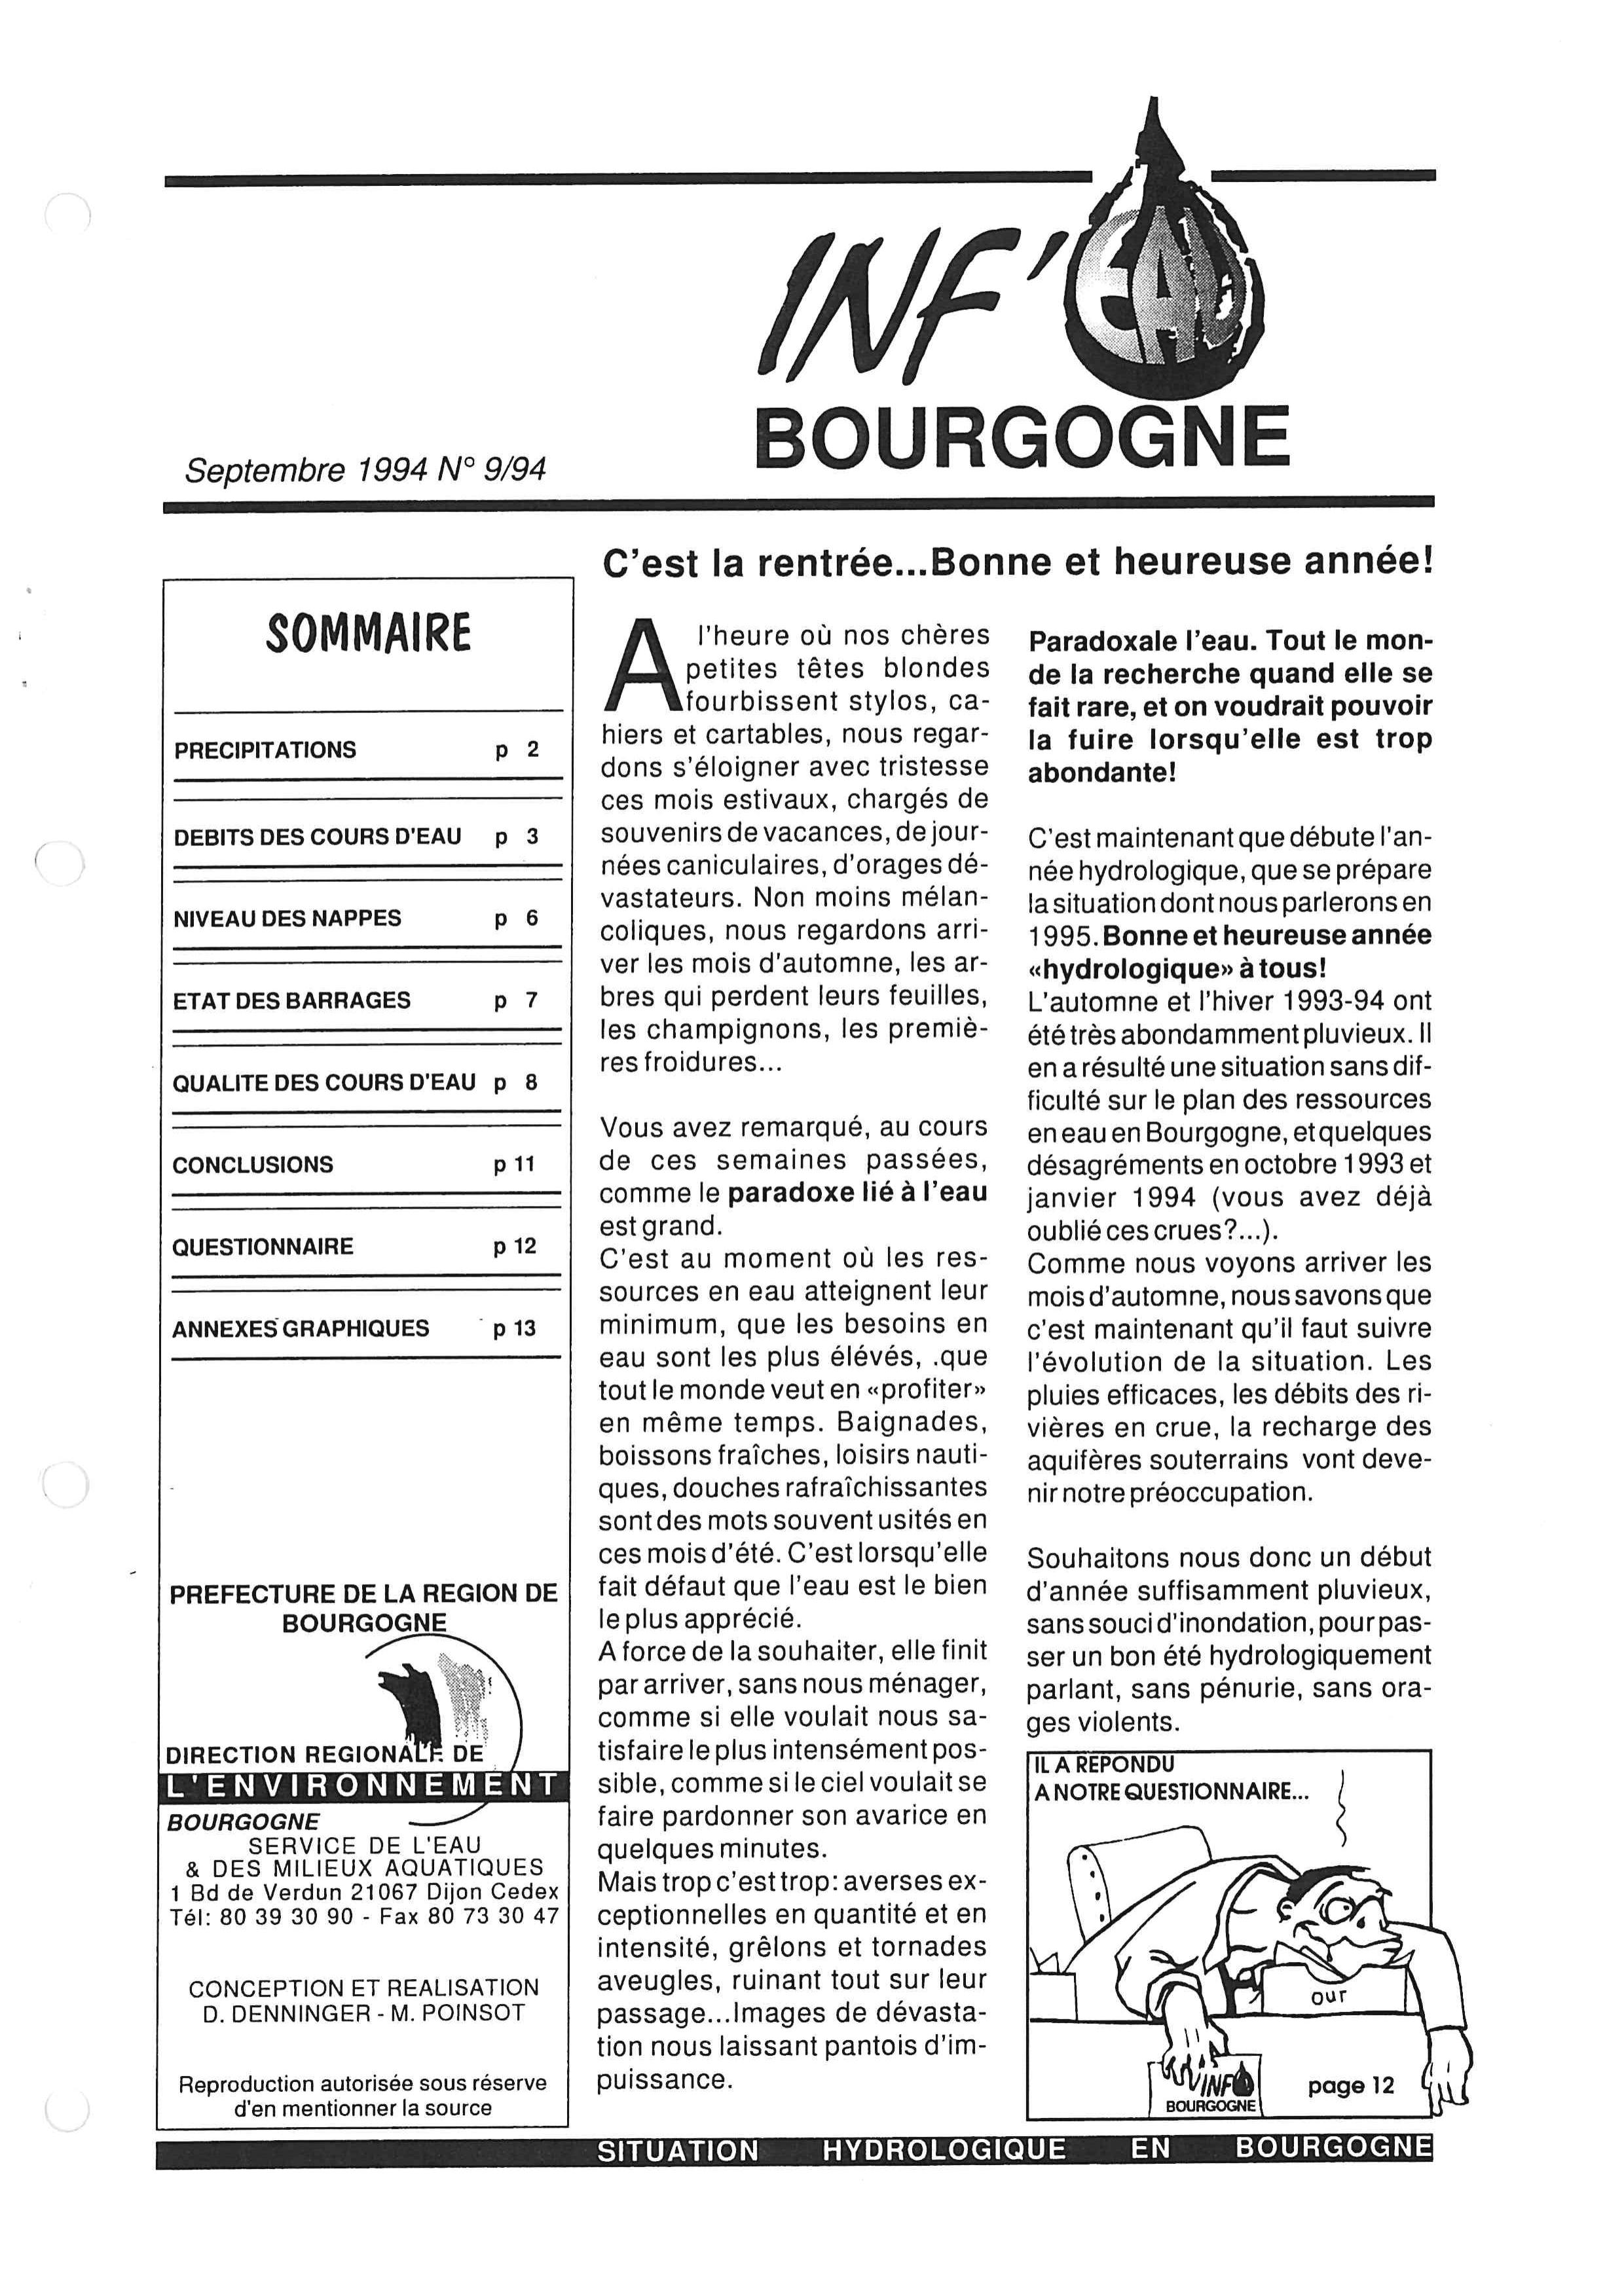 Bulletin hydrologique du mois d'août 1994